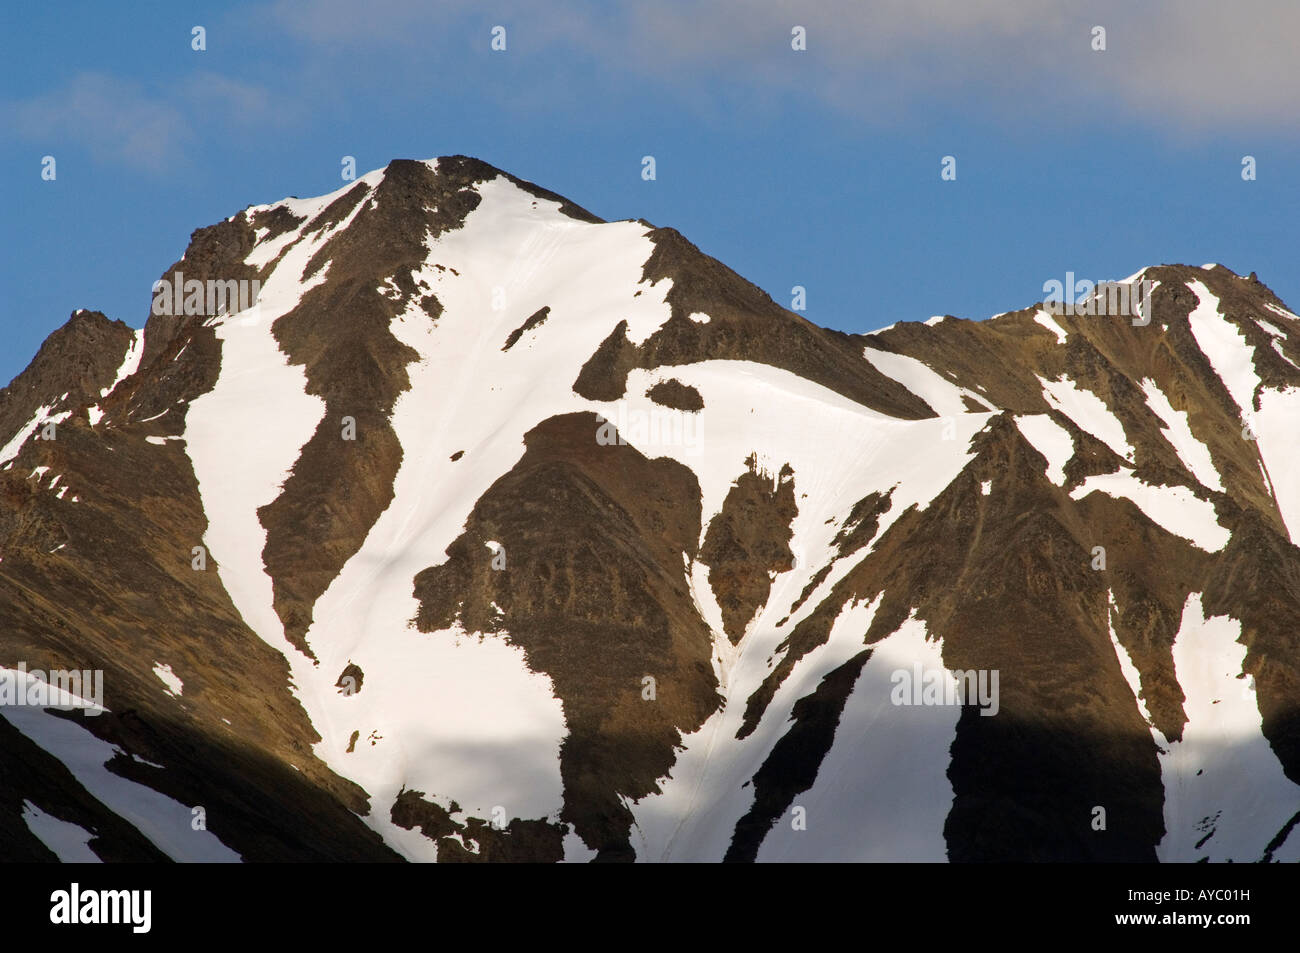 USA, Alaska. Neige sur une montagne dans la chaîne de l'Alaska au début de juin. Les montagnes sont appelés localement les Craggies. Banque D'Images